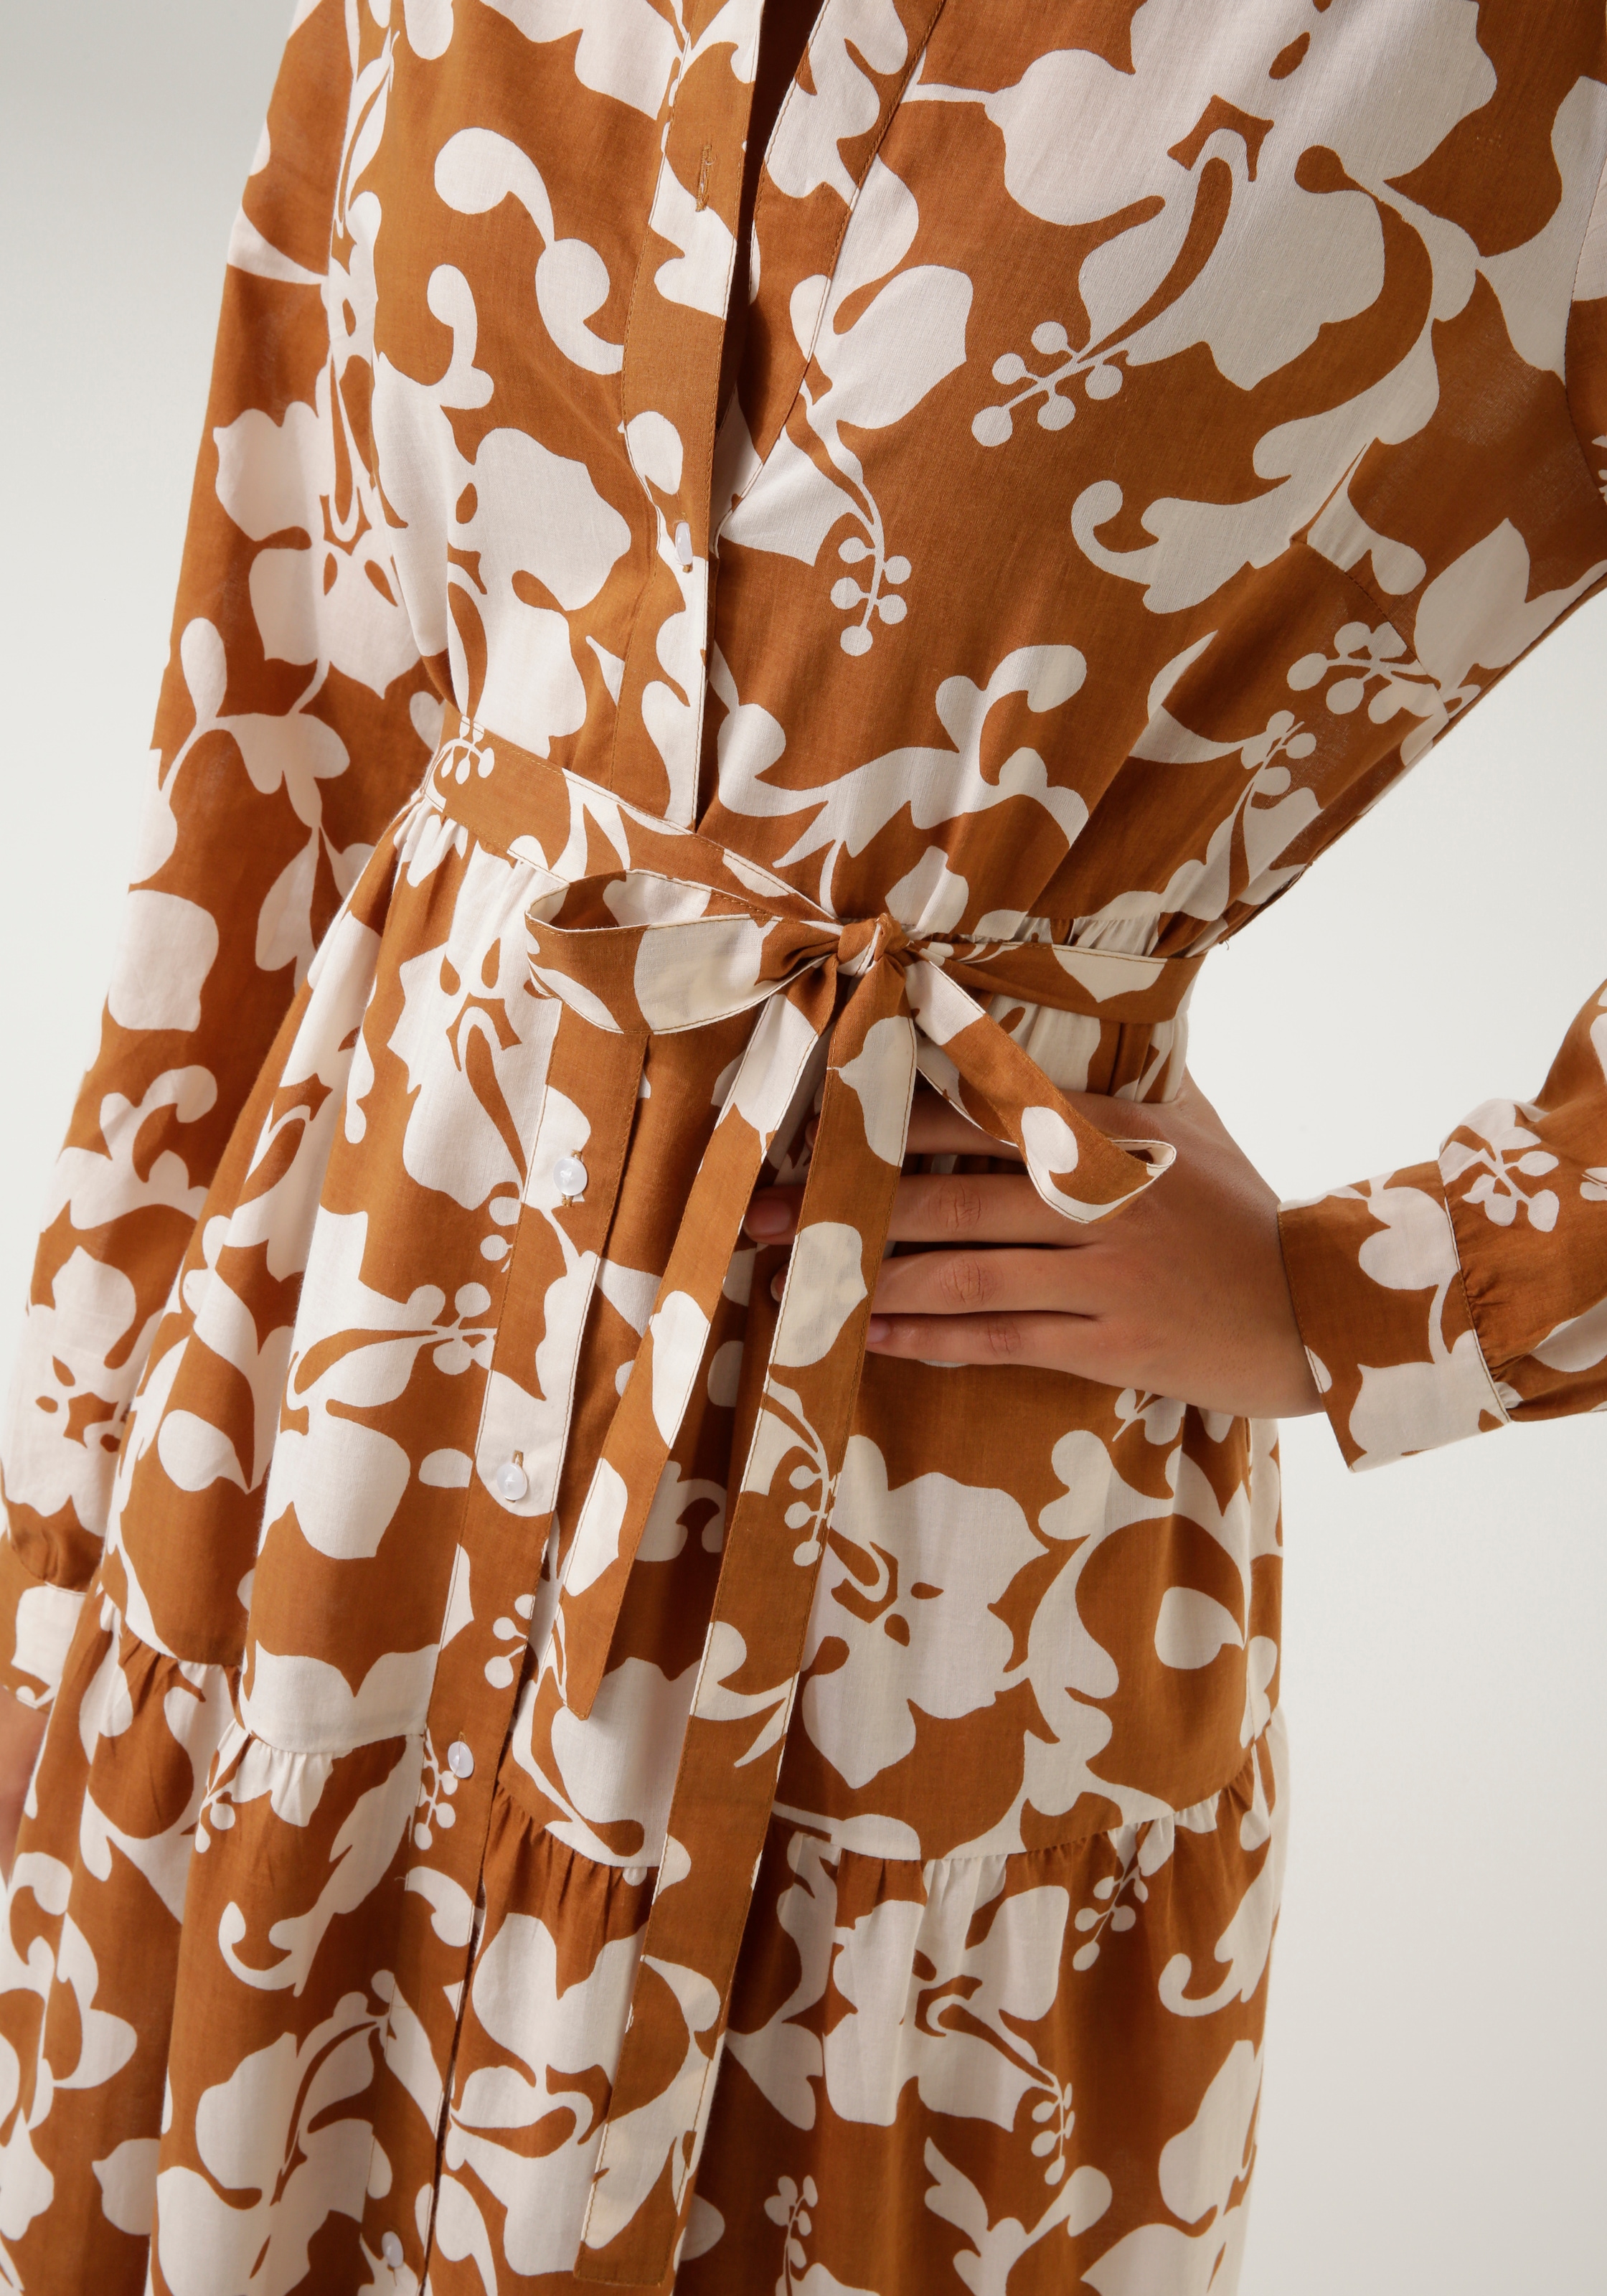 Aniston CASUAL Blusenkleid, mit graphischem Blumendruck - jedes Teil ein Unikat - NEUE KOLLEKTION